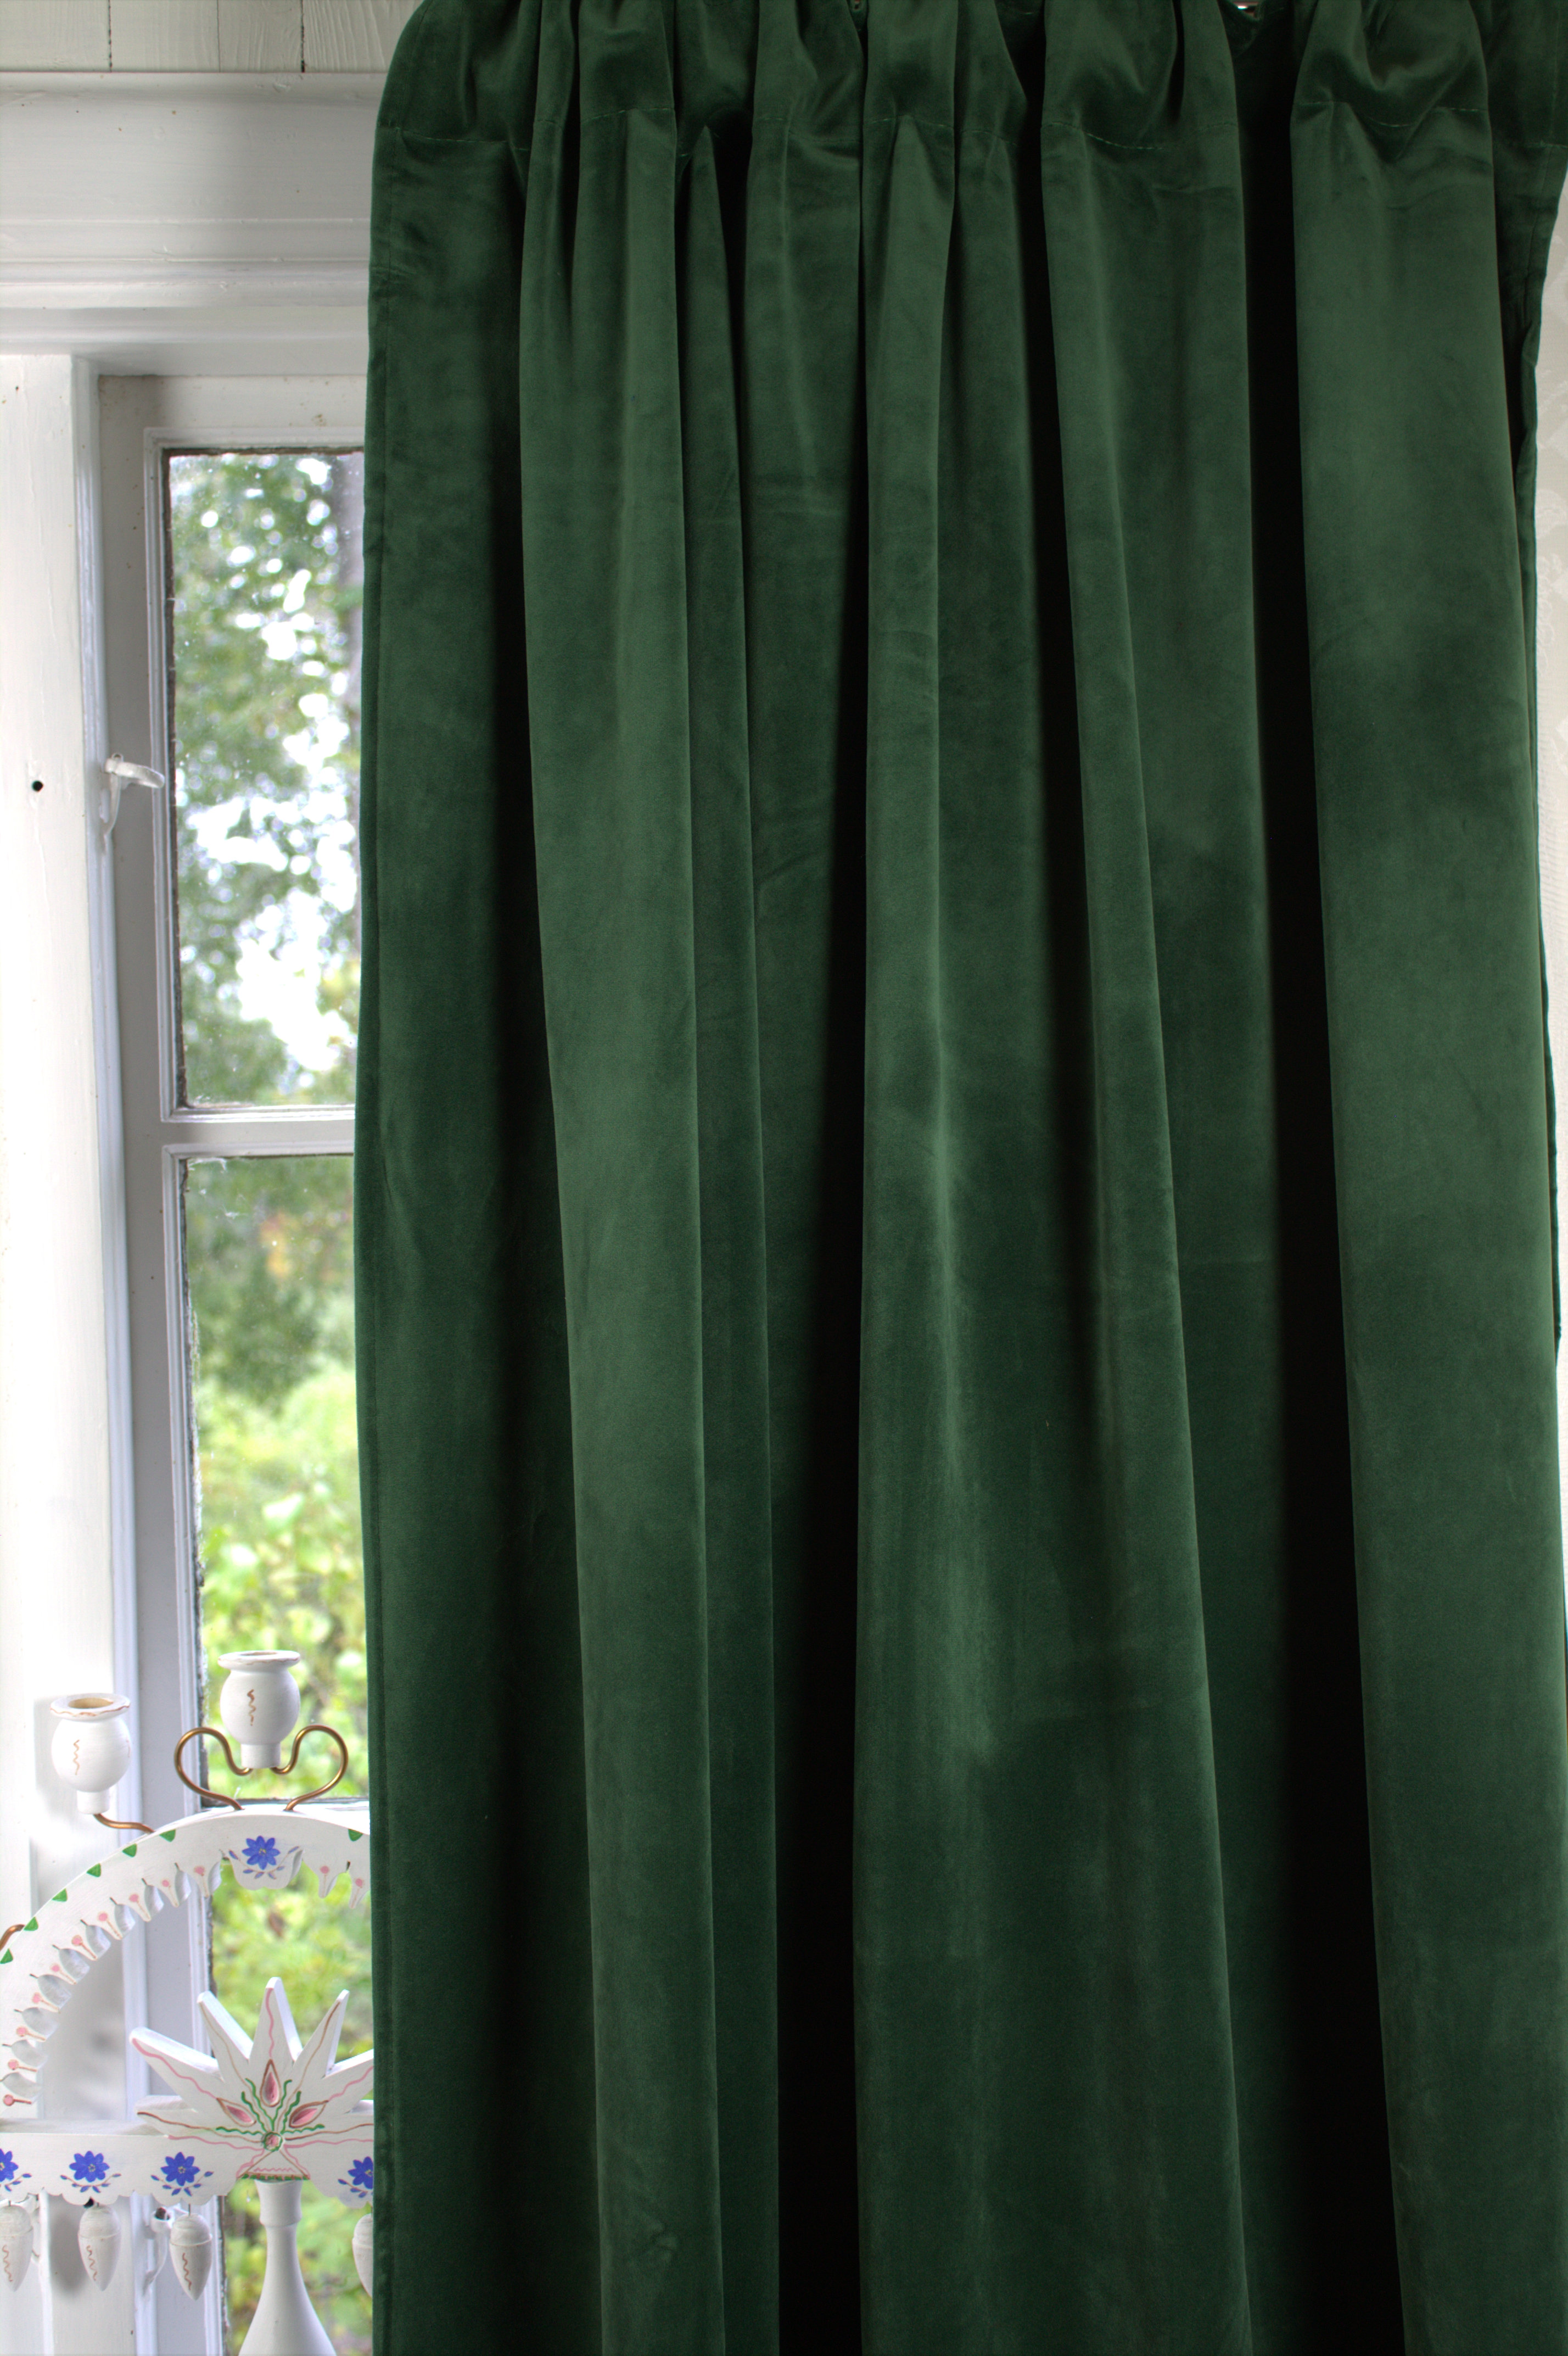 | | Samt Blickdicht Landhausstil Tannen GABRIELLA Zauberhafter cm Vorhang 2 Stück | Grün Vorhänge Gardinen & 140x280 Gardinenschals